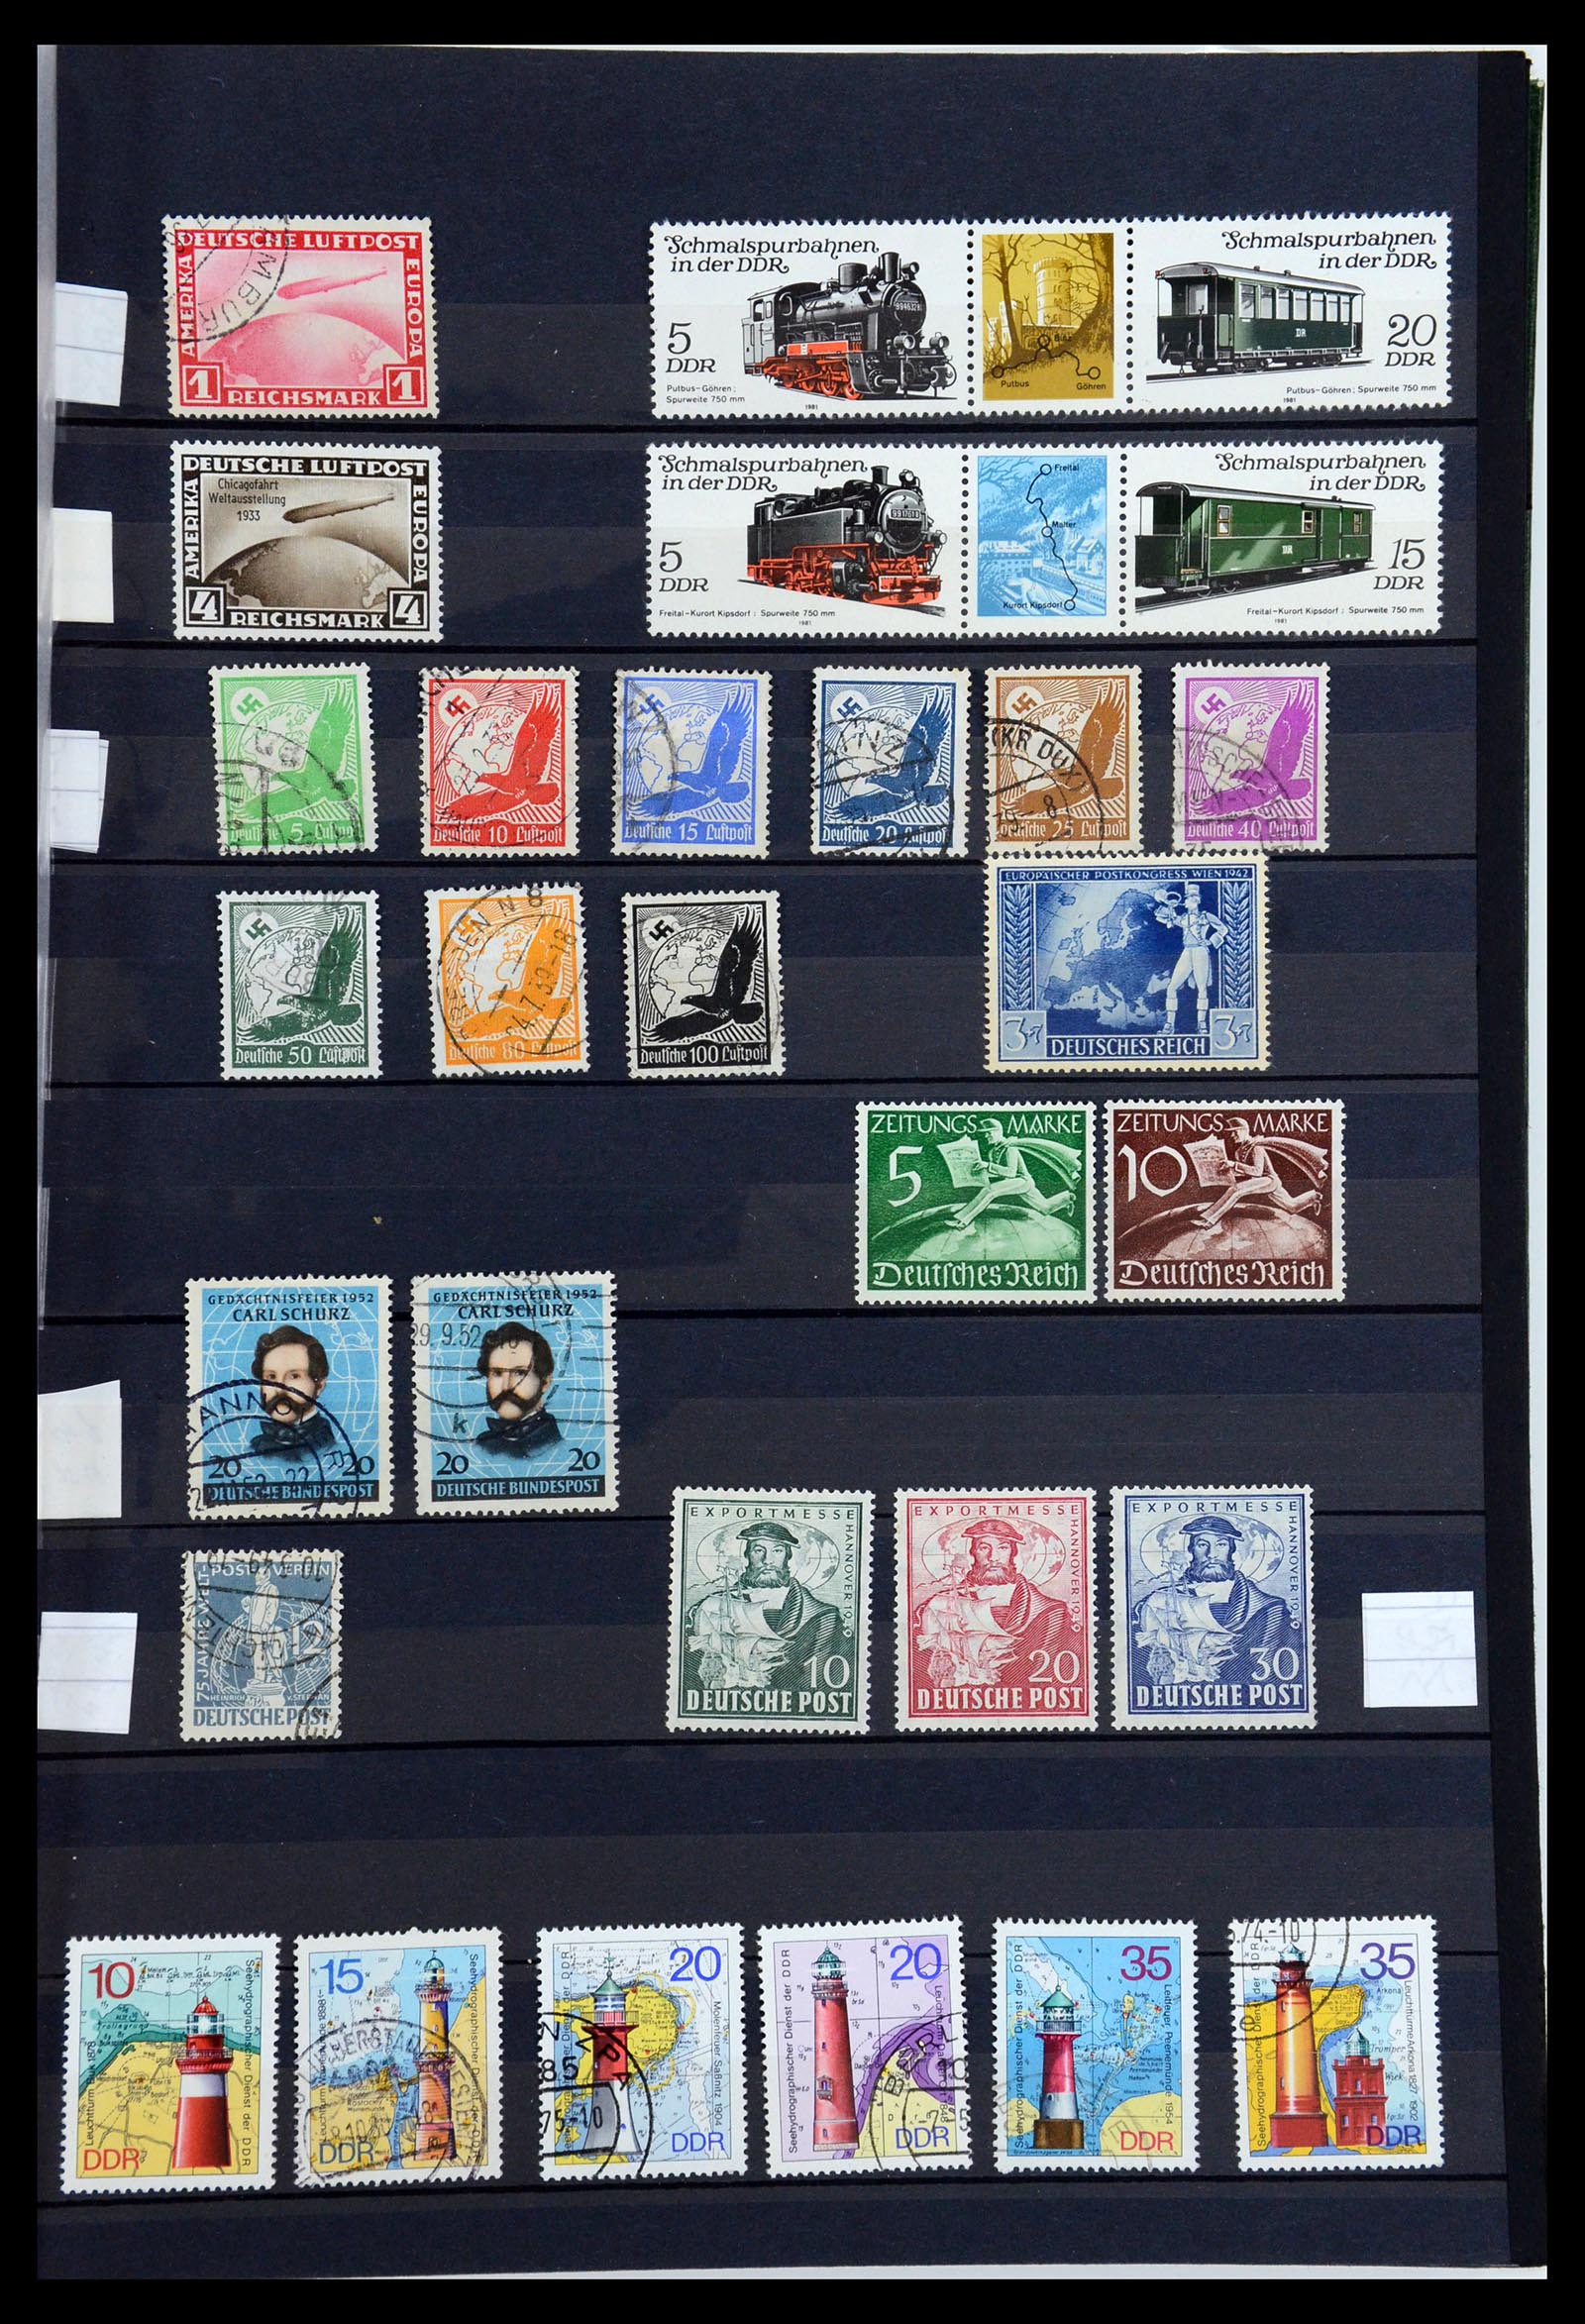 36238 009 - Postzegelverzameling 36238 Motief landkaarten 1900-2000.